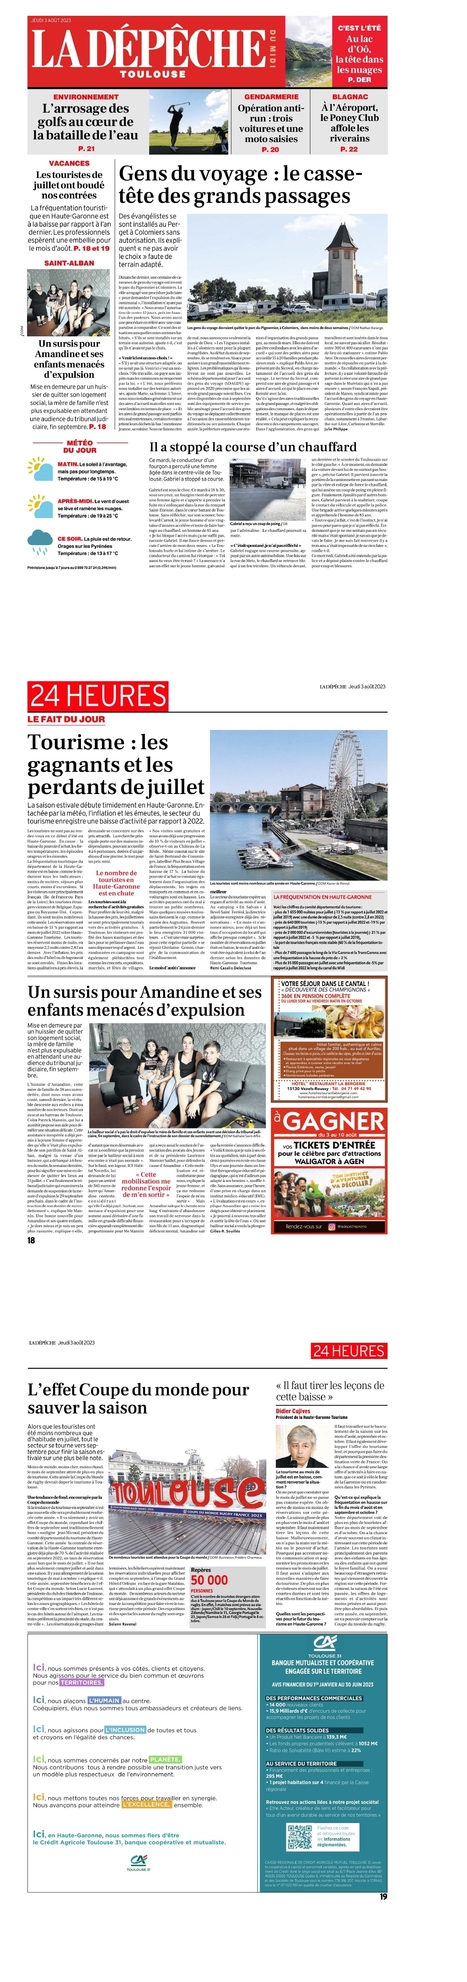 Tourisme en Haute-Garonne : les gagnants et les perdants de juillet - ladepeche.fr | Haute-Garonne tourisme | Scoop.it